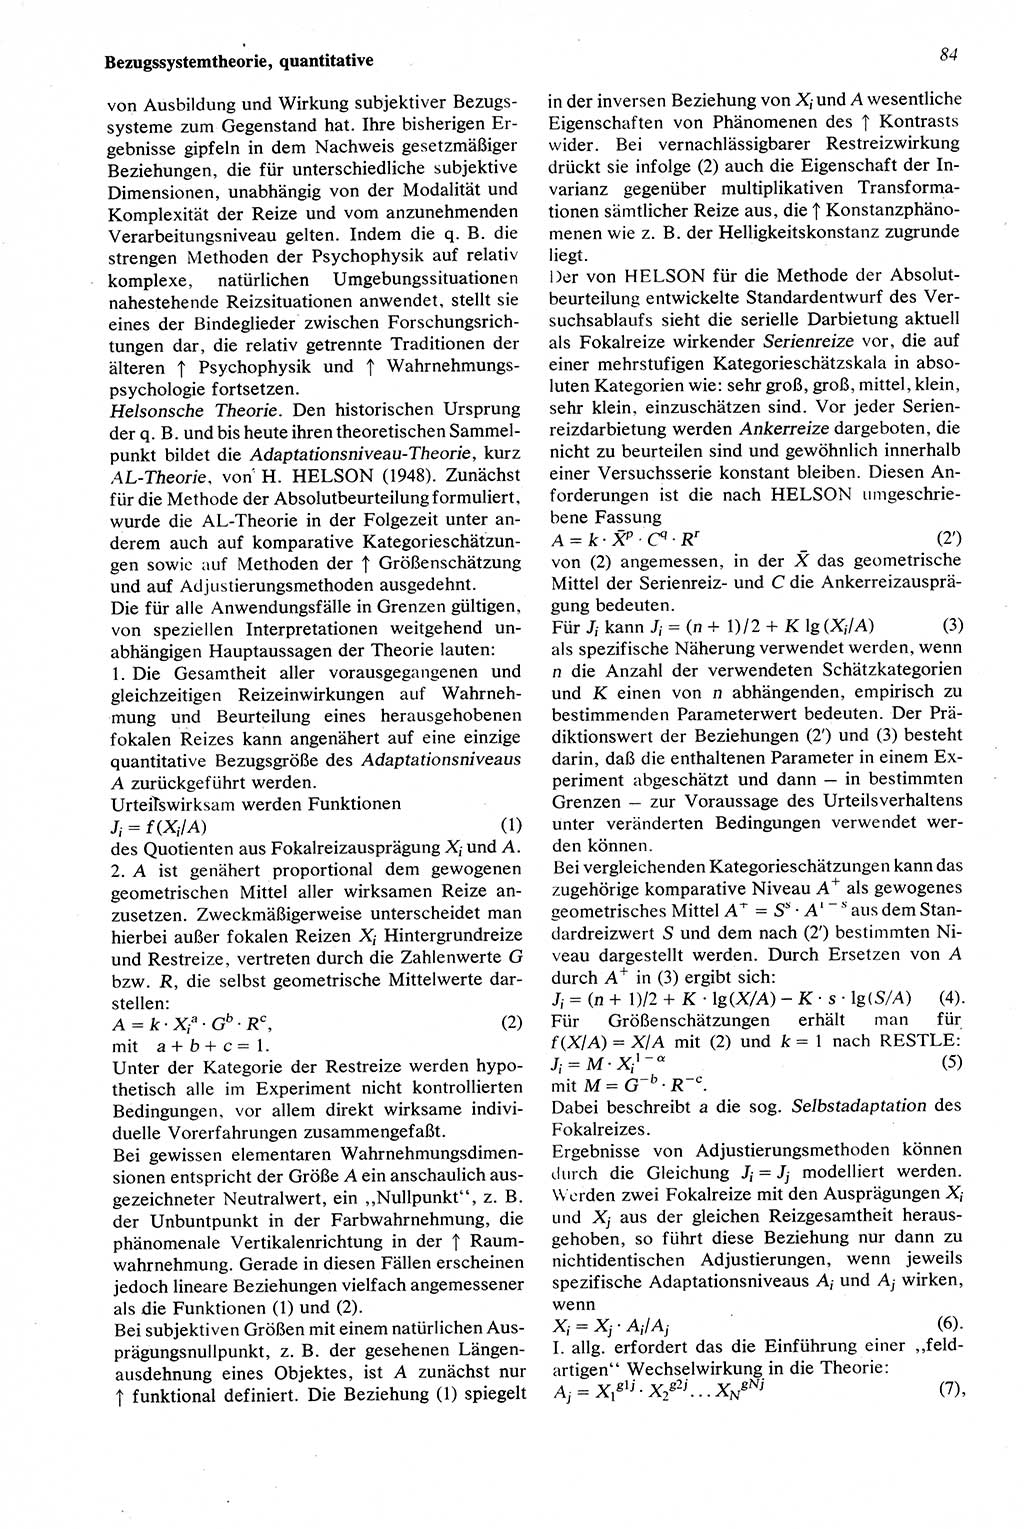 Wörterbuch der Psychologie [Deutsche Demokratische Republik (DDR)] 1976, Seite 84 (Wb. Psych. DDR 1976, S. 84)